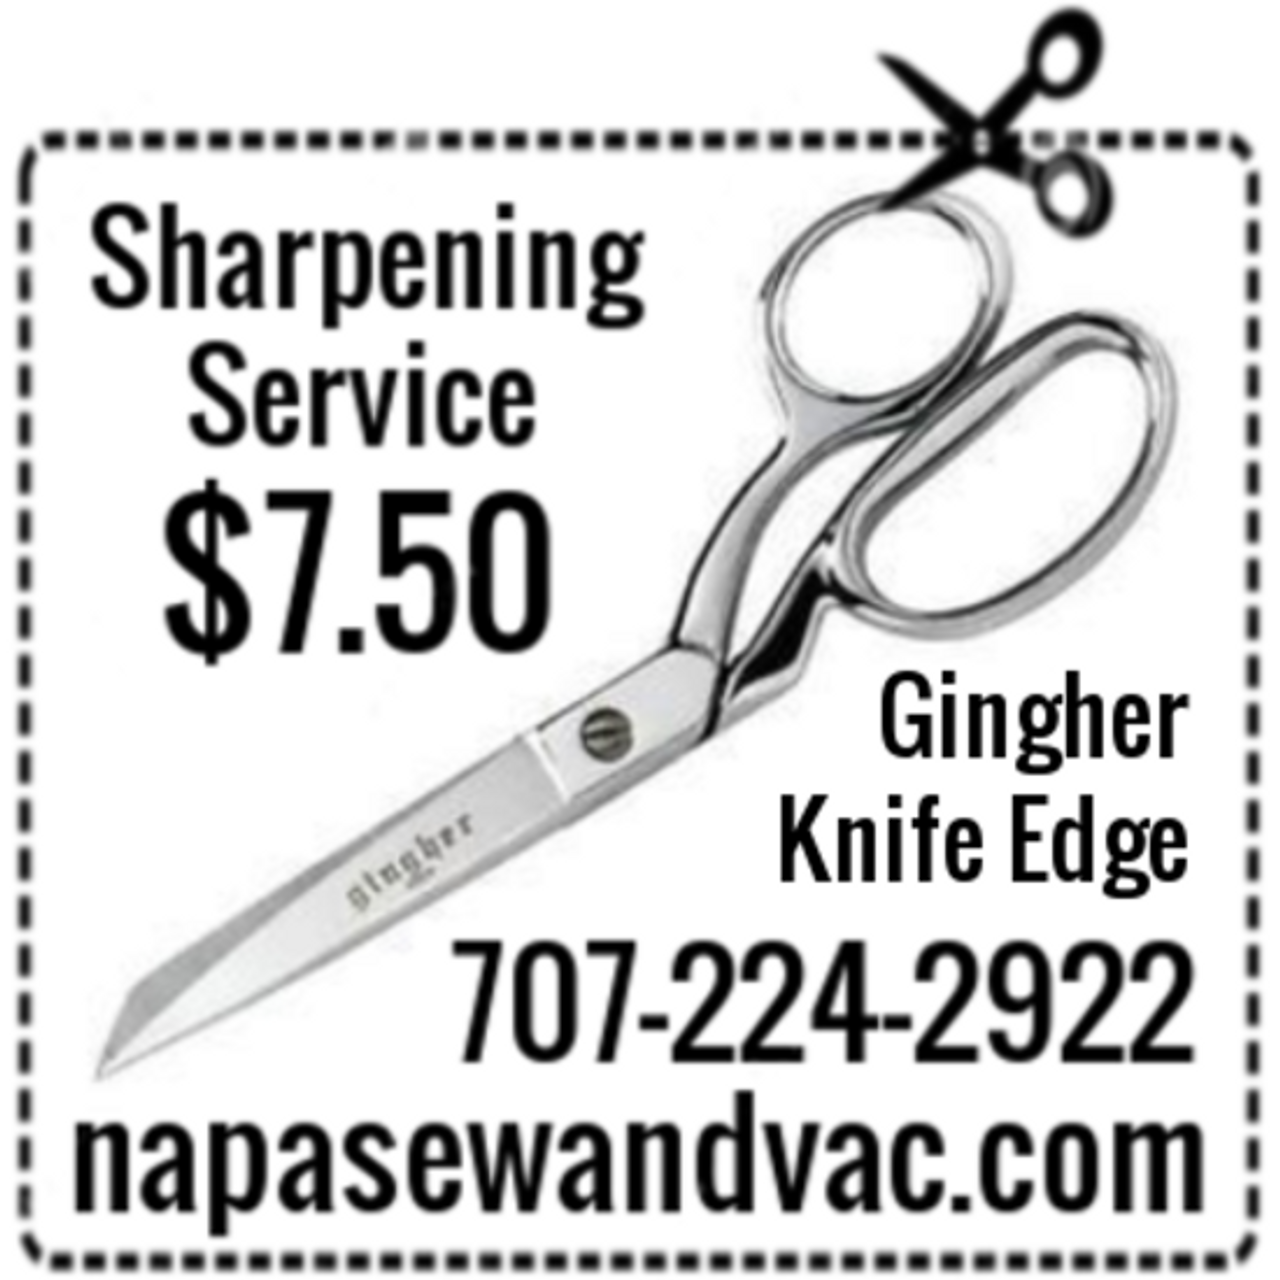 Grooming Shear Sharpening - NAPA SEW & VAC